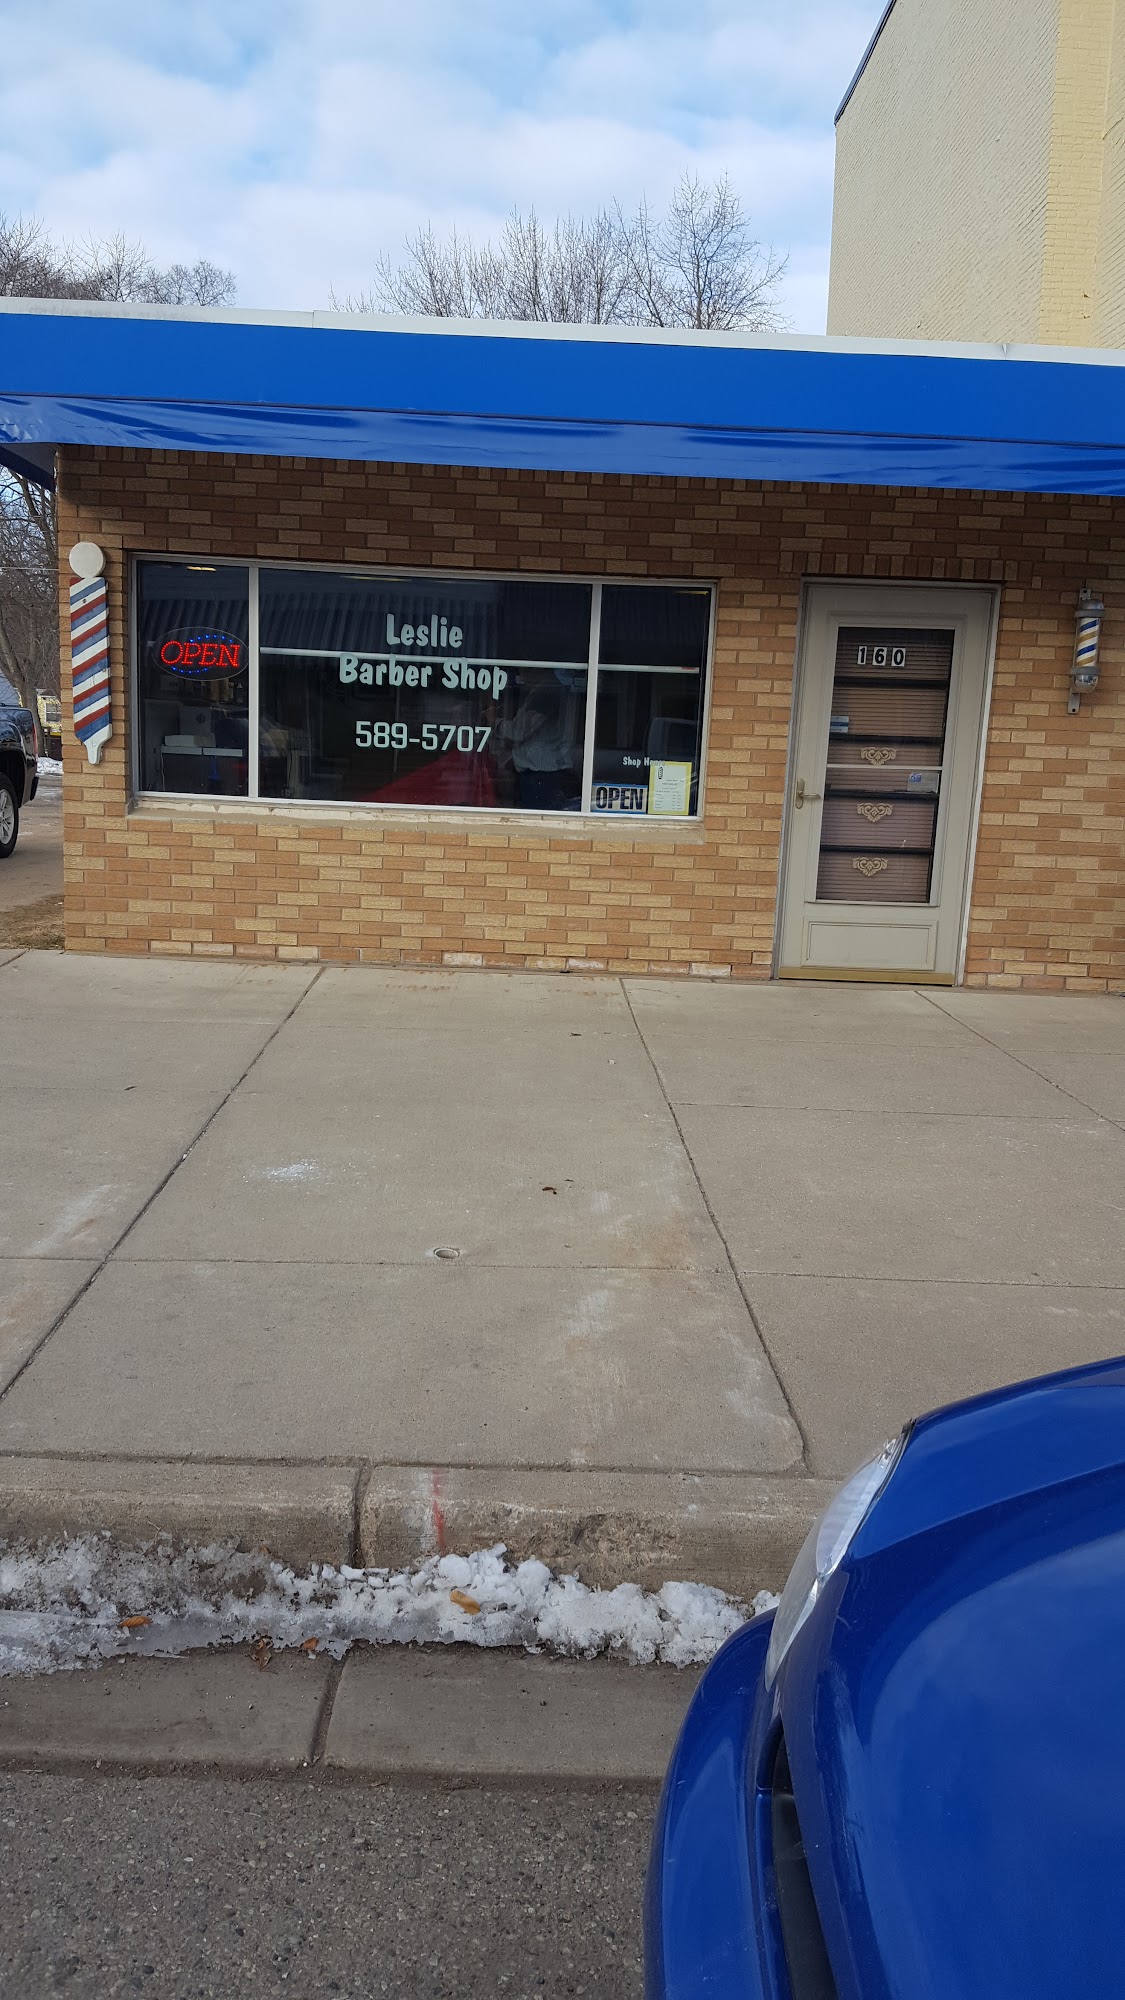 Denny's Barber Shop 160 S Main St, Leslie Michigan 49251